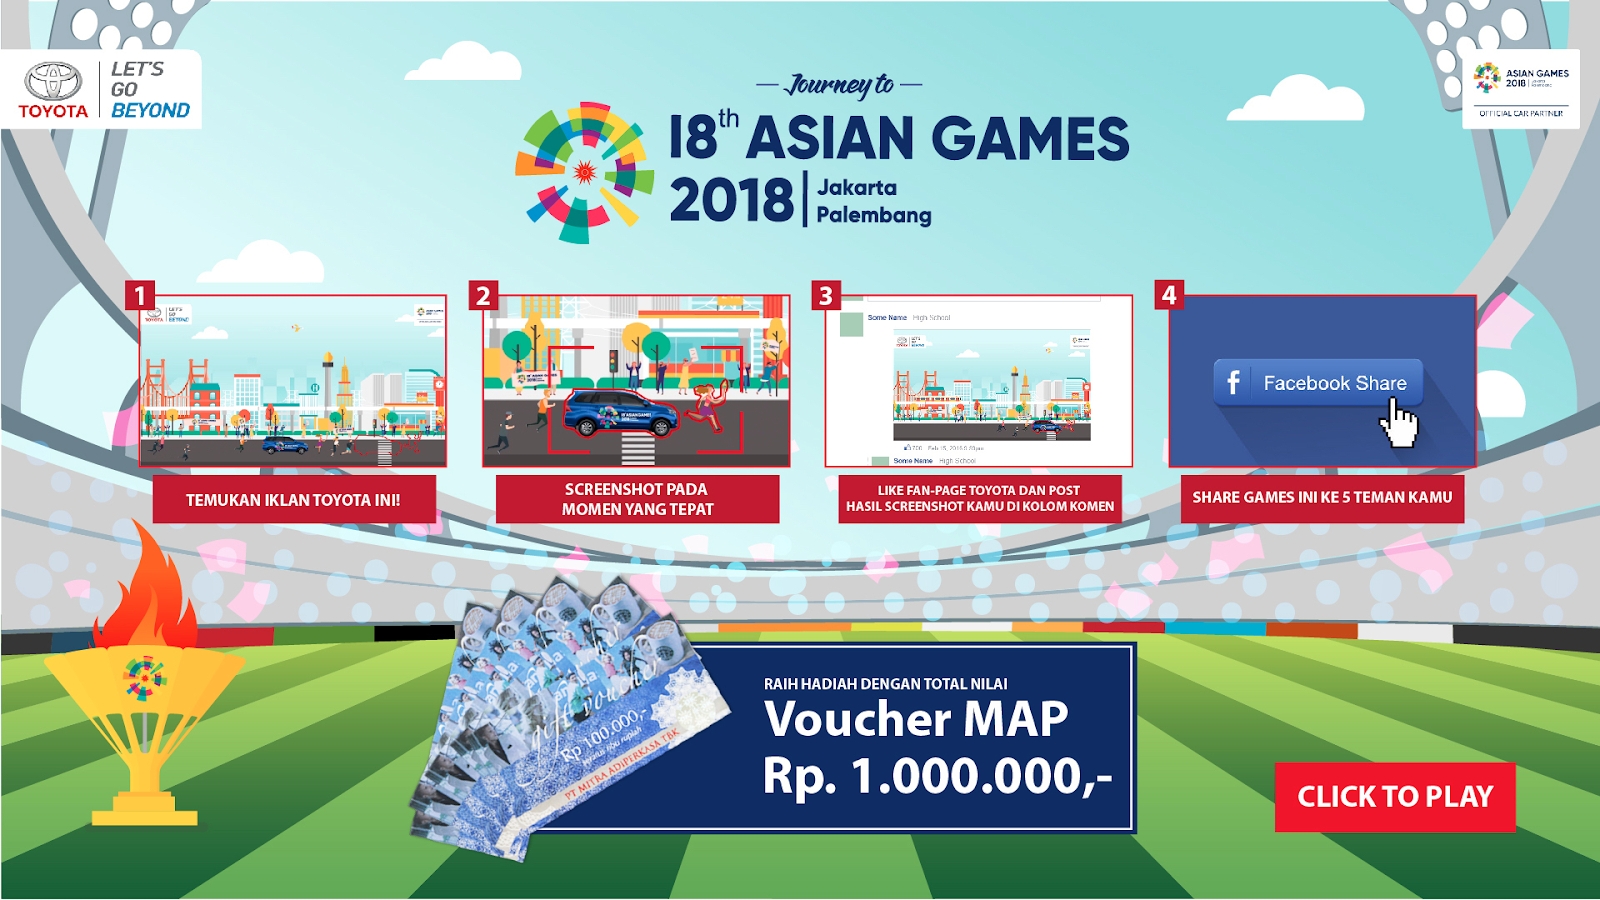 EMC Membuat Games Berbasis Iklan Digital Bertema Journey To 18th Asian Games